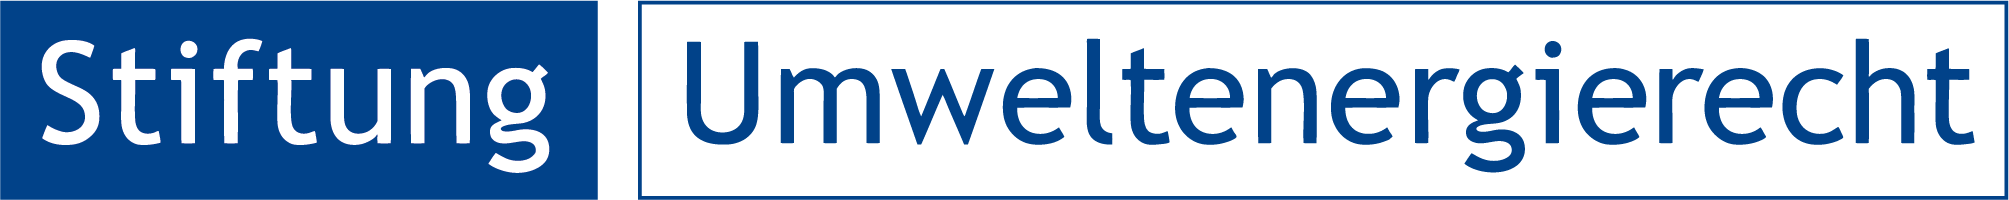 Logo-Stiftung Umweltenergierecht